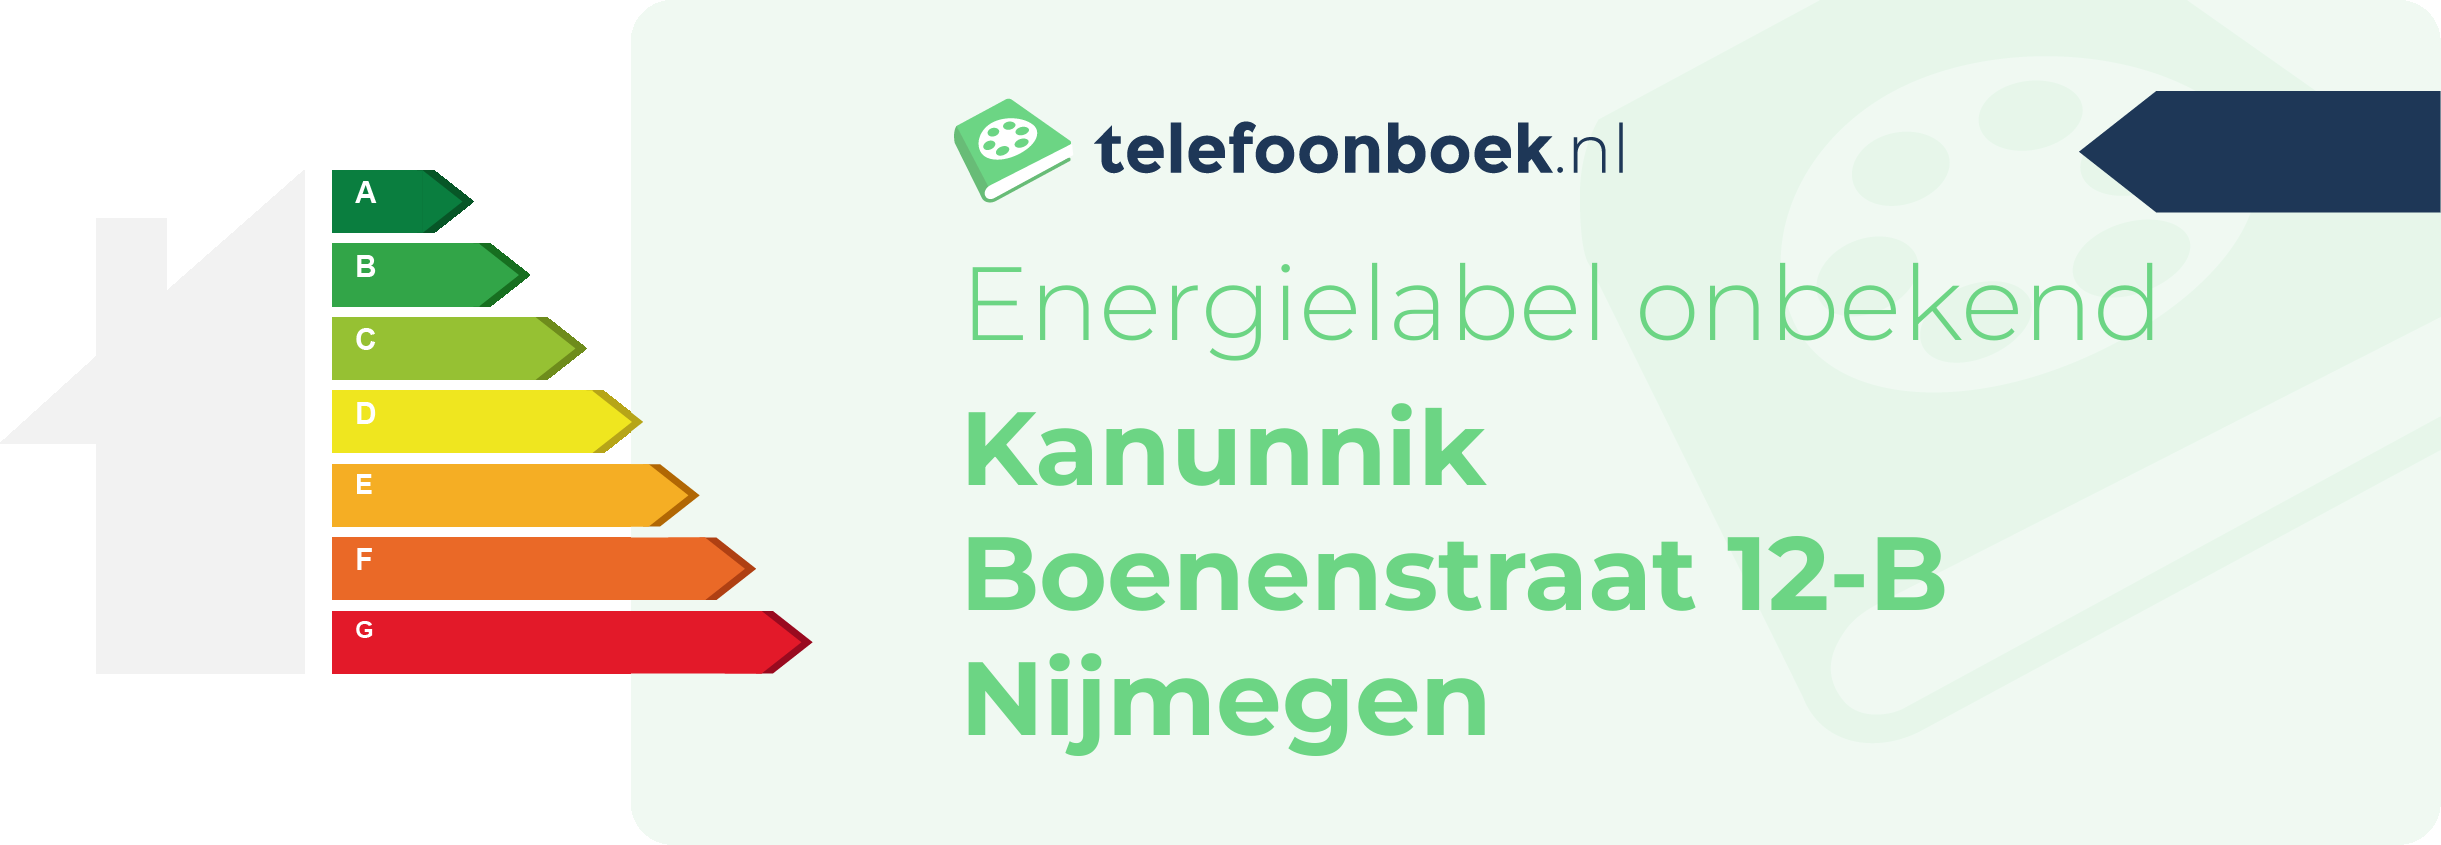 Energielabel Kanunnik Boenenstraat 12-B Nijmegen